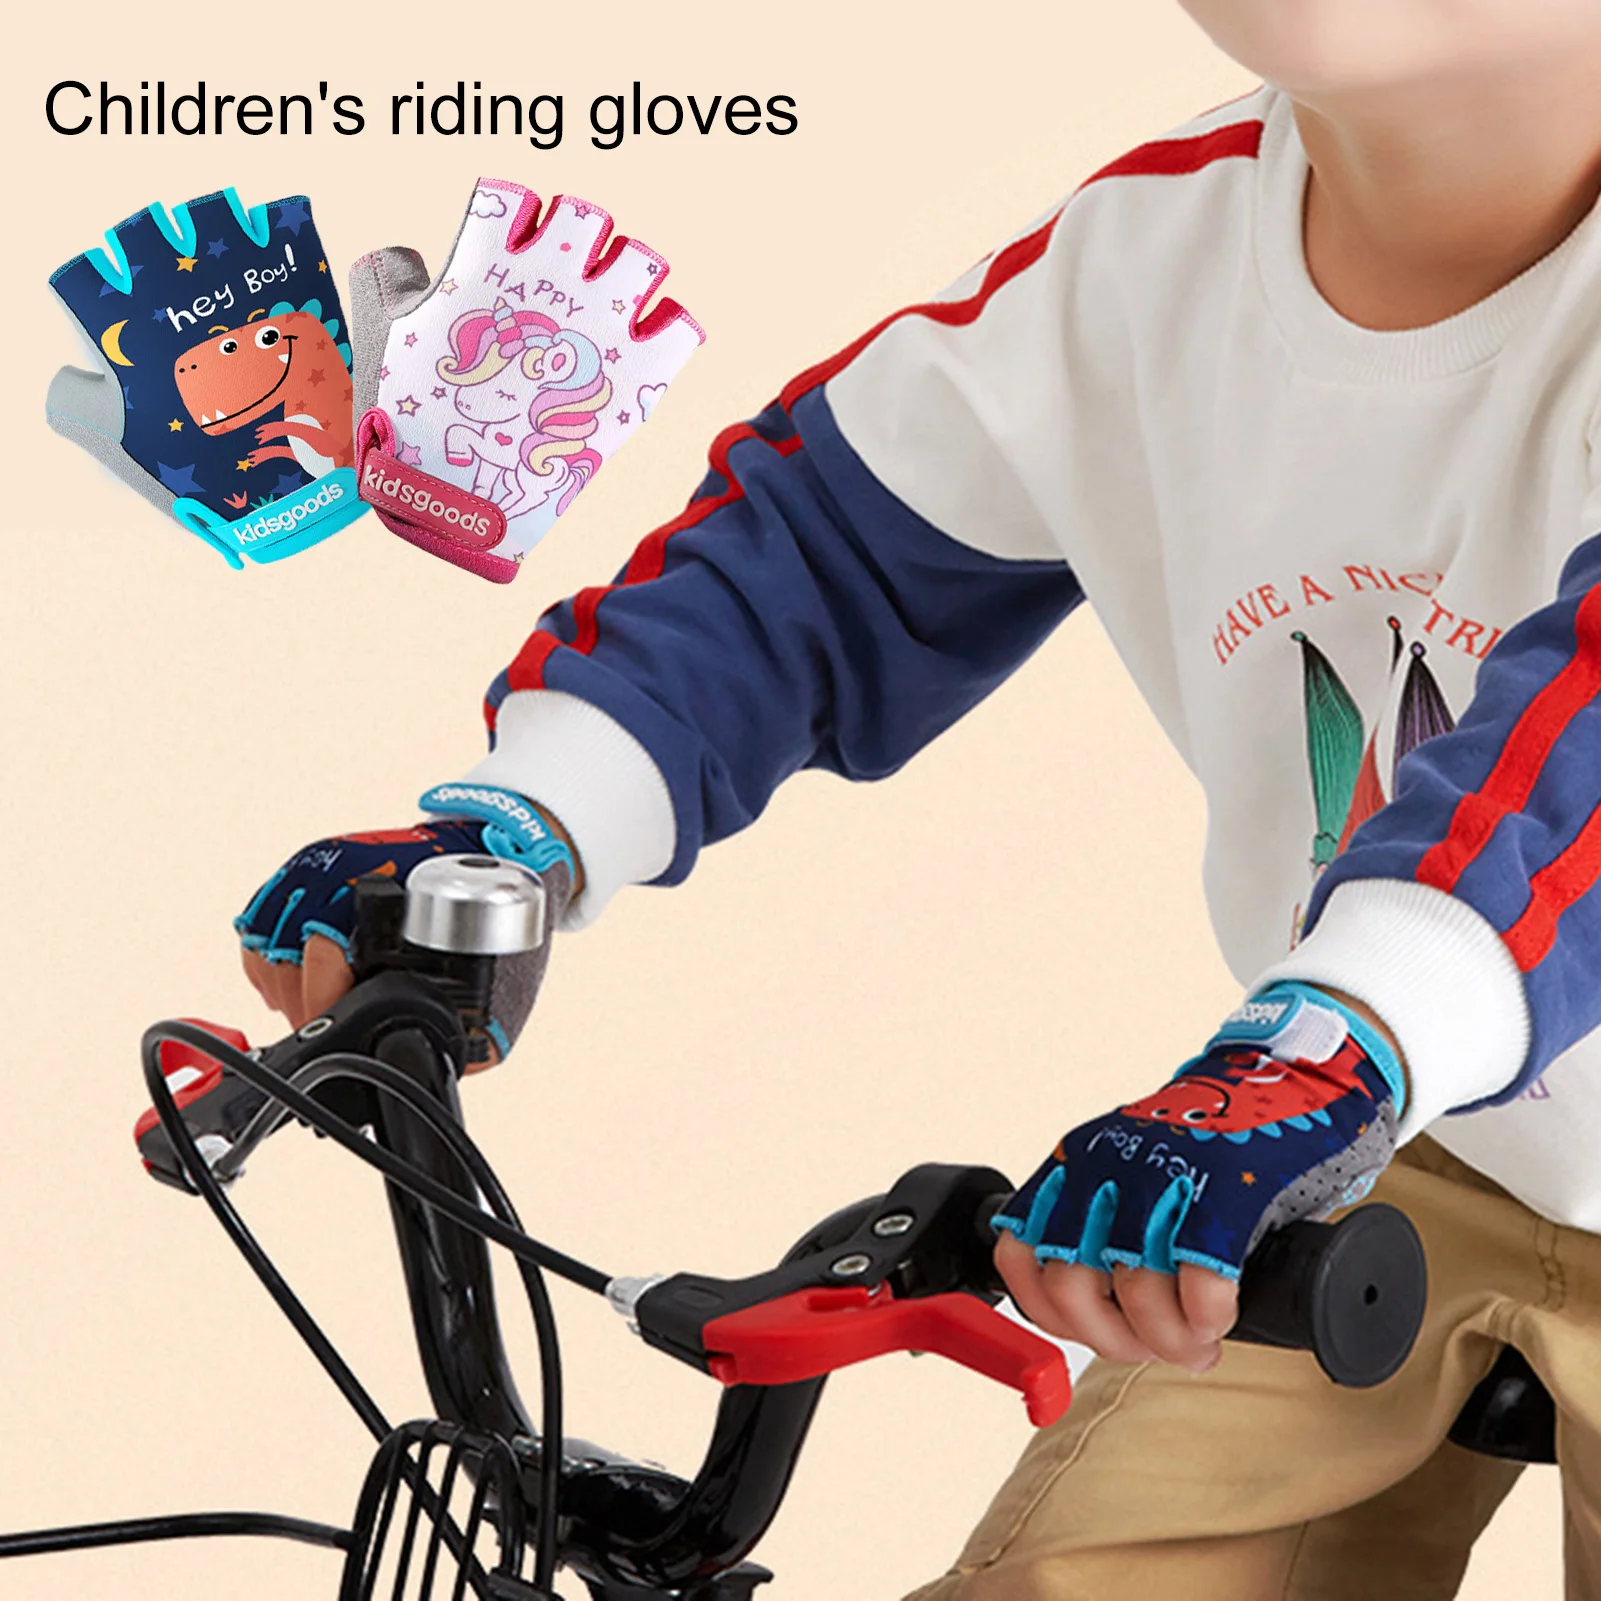  2 pares de guantes deportivos de ciclismo para niños, guantes  de medio dedo de unicornio, guantes de ciclismo para niños y niñas, guantes  de pesca para ciclismo, campamento, pesca, deportes al